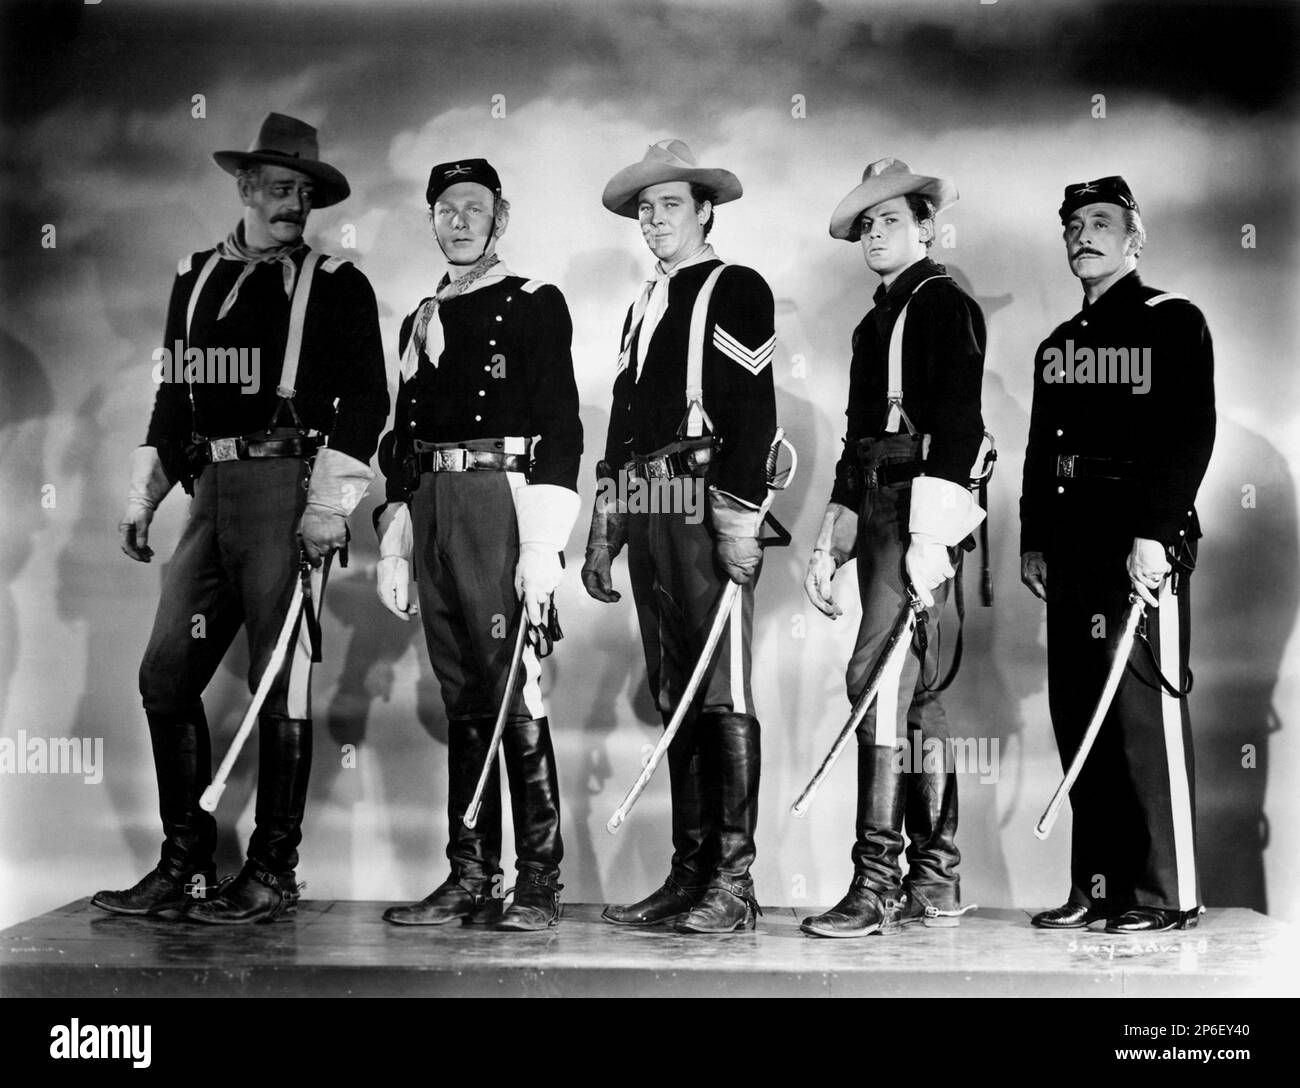 1948 : les célèbres acteurs de cinéma JOHN WAYNE avec GEORGE O'BRIEN (premier à partir de la droite) dans un cliché pubblicavitaire pour le film QU'ELLE PORTAIT Un RUBAN JAUNE ( I cavalieri del Nord-Ovest ) par John FORD , D'un roman de James Warner Bellah - CINÉMA - ATTORE CINEMATOGRAFICO - COW-BOY - WESTERN - Hat - cappello - FILM - spada - épée - Foulard - bandanna - bandana - uniforme militaire - divisa militare - gants - guanti - cavalleria - stands - stivalii --- Archivio GBB Banque D'Images